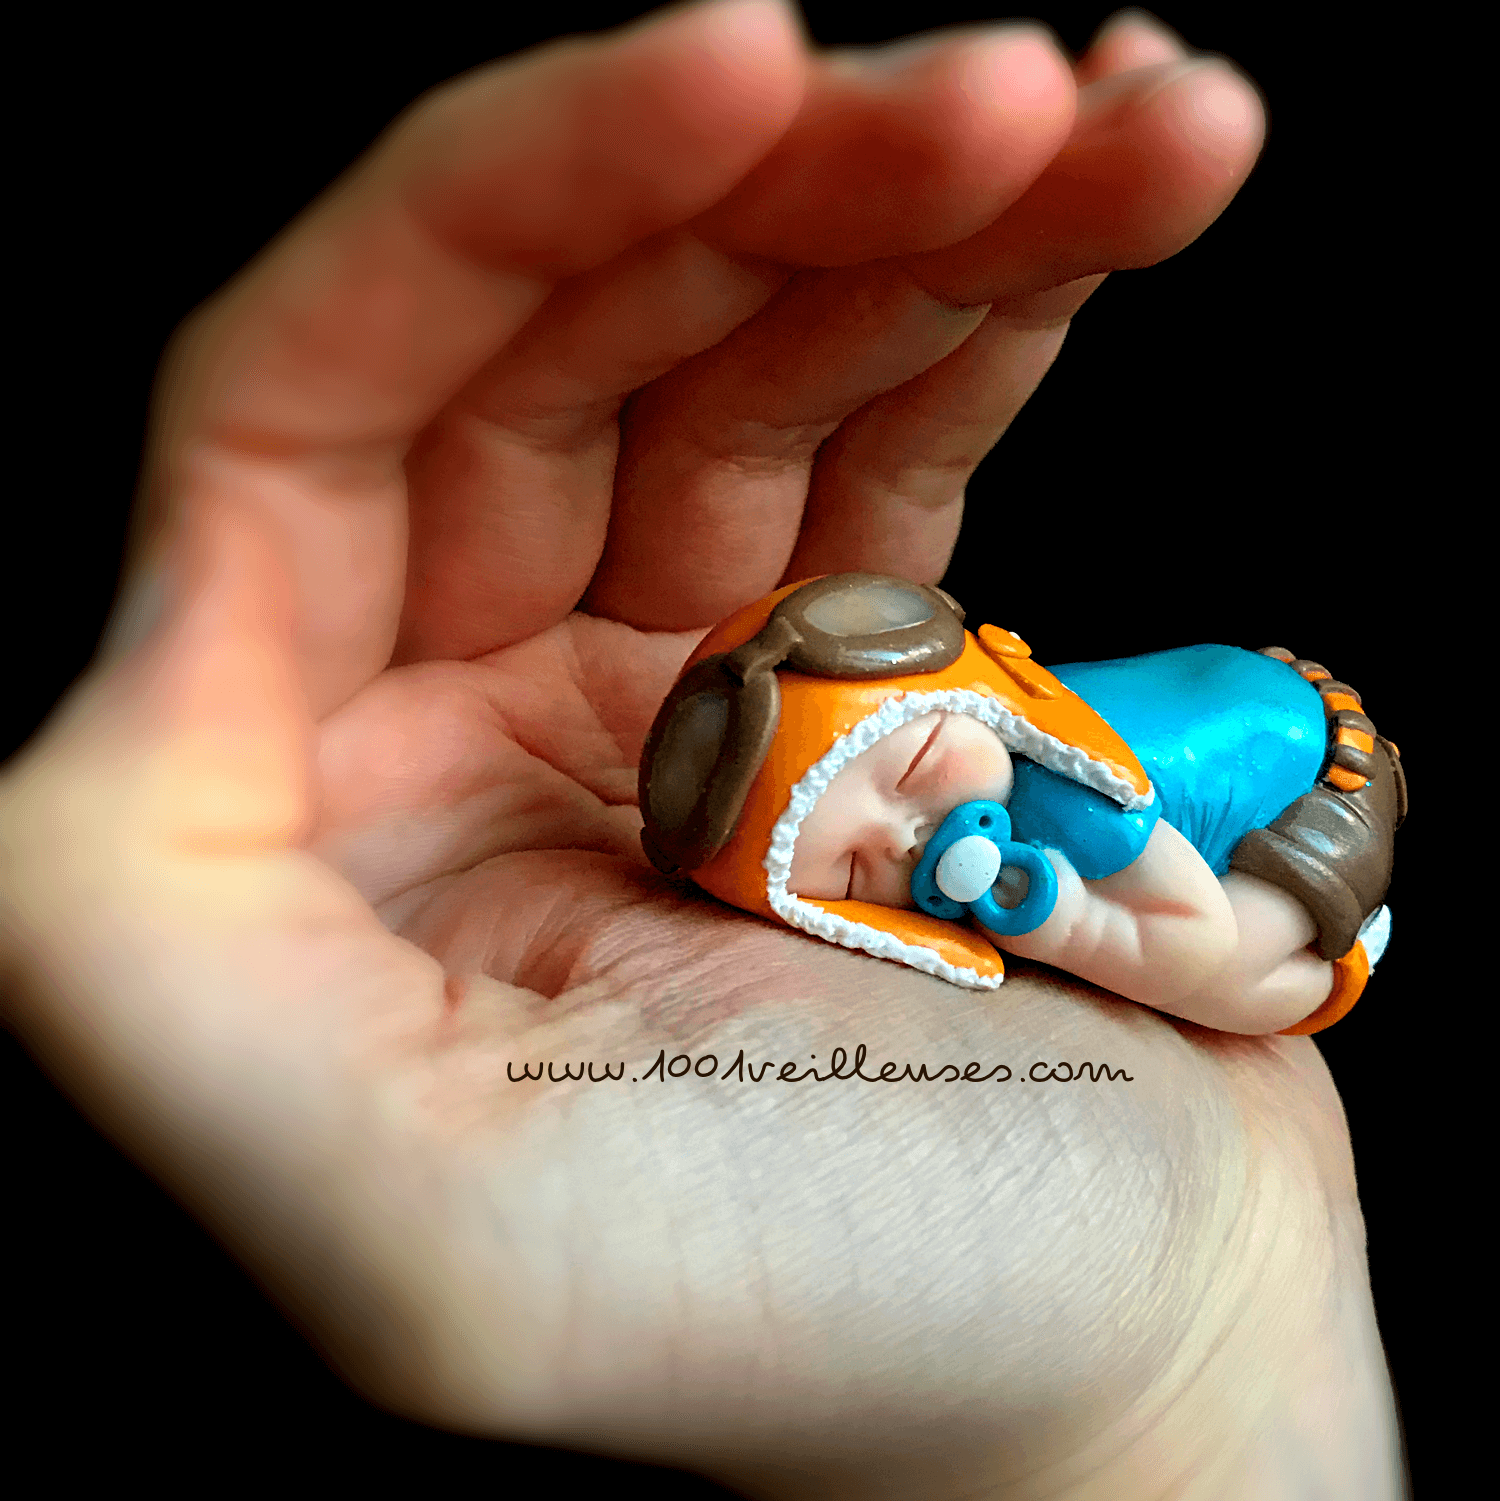 Figura de niño en polímero (fimo) disfrazado de aviador, hecha a mano